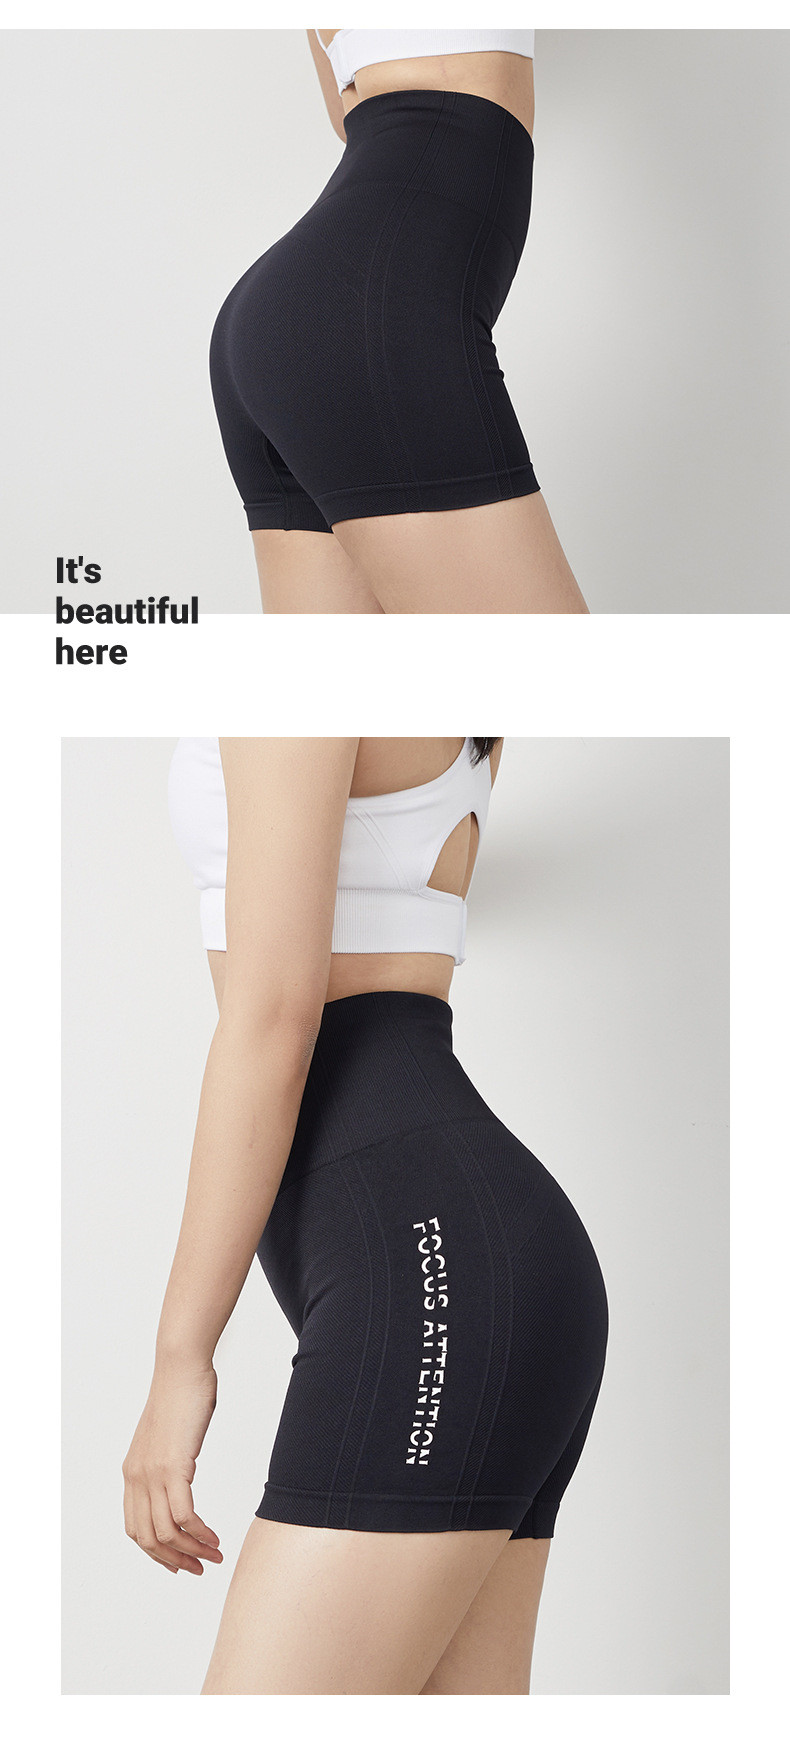 施悦名 义昂2020春夏新款紧身运动修身瑜伽短裤女健身高腰提臀弹力跑步裤